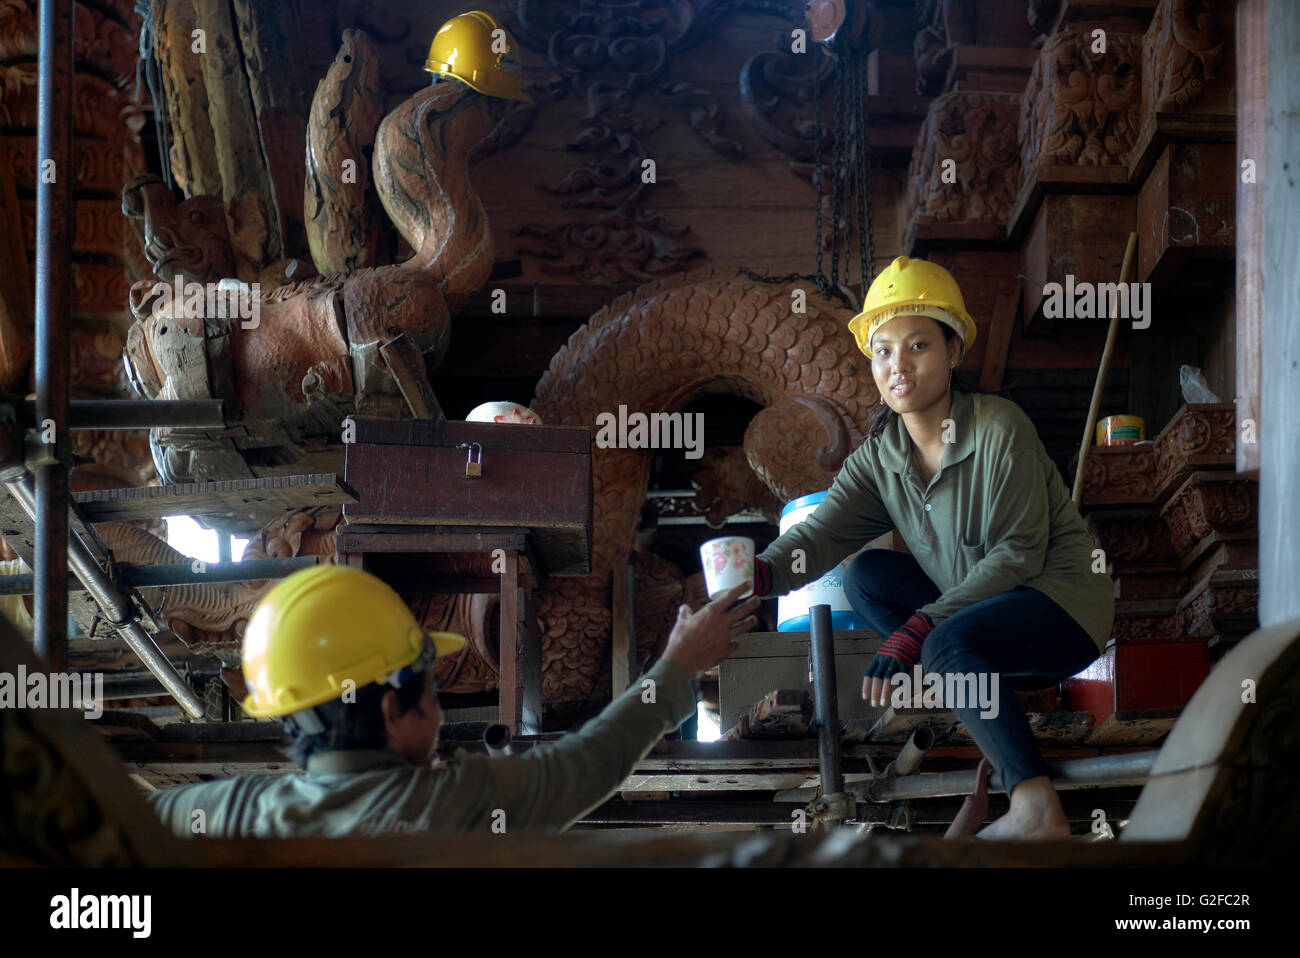 Woman - Hut. Baustellenarbeiterin für Frauen mit männlichem Gegenstück. Heiligtum der Wahrheit (Prasat SUT Ja-Tum) Pattaya Thailand S. E. Asien Stockfoto